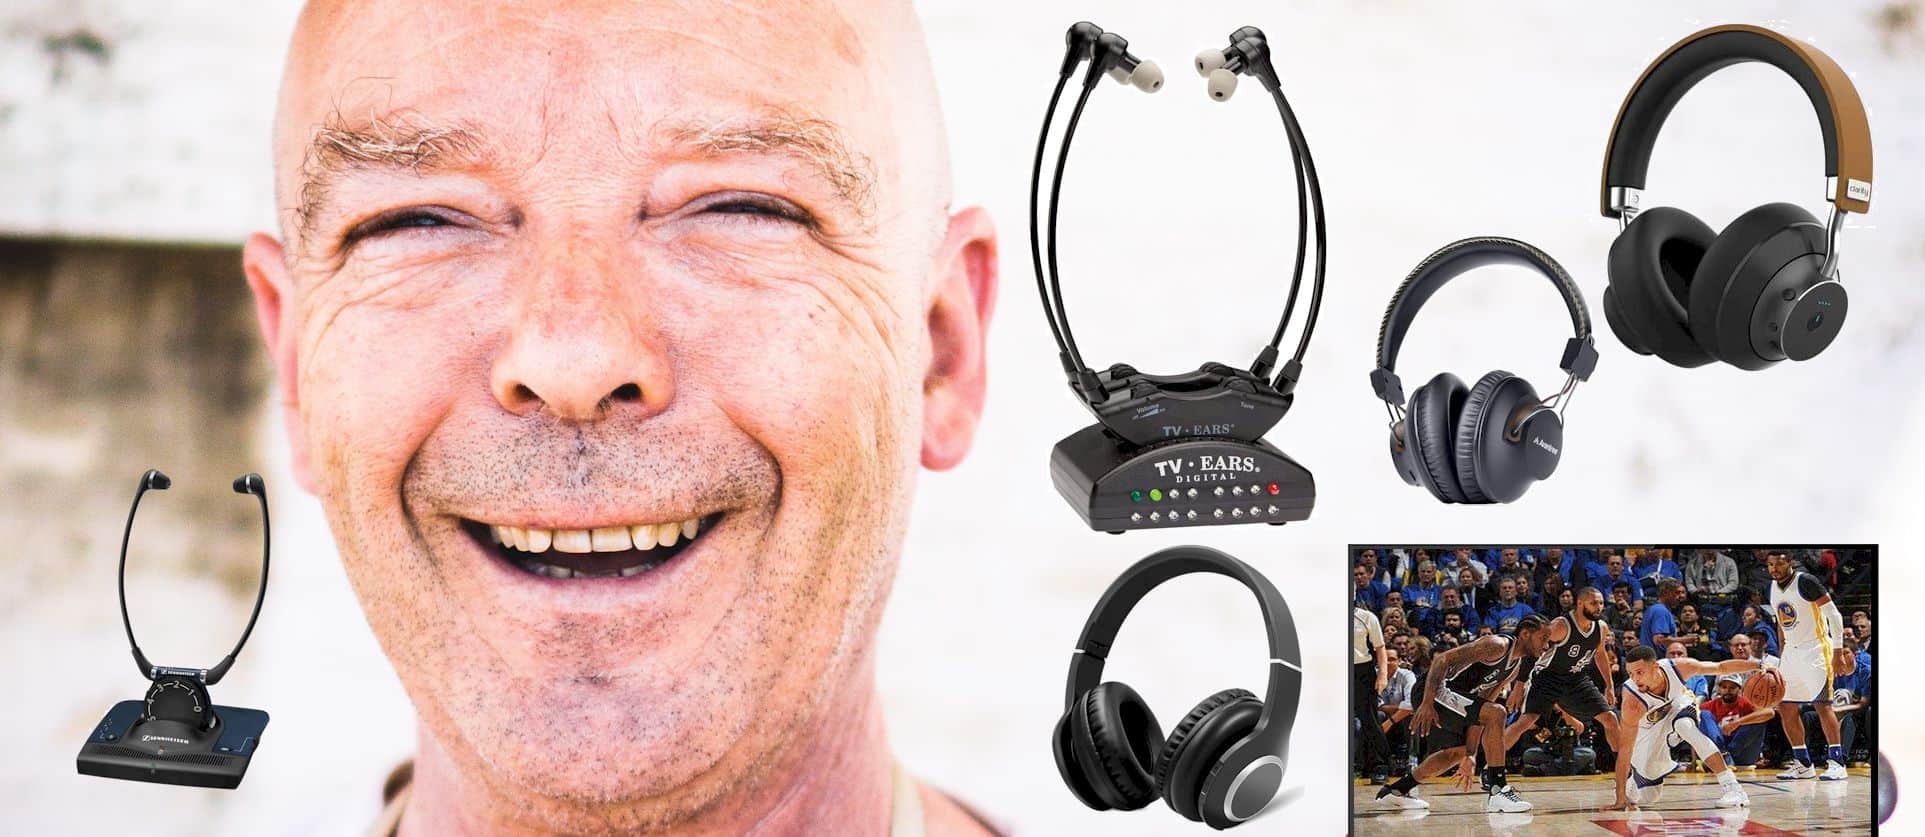 Best TV Headphones for Seniors